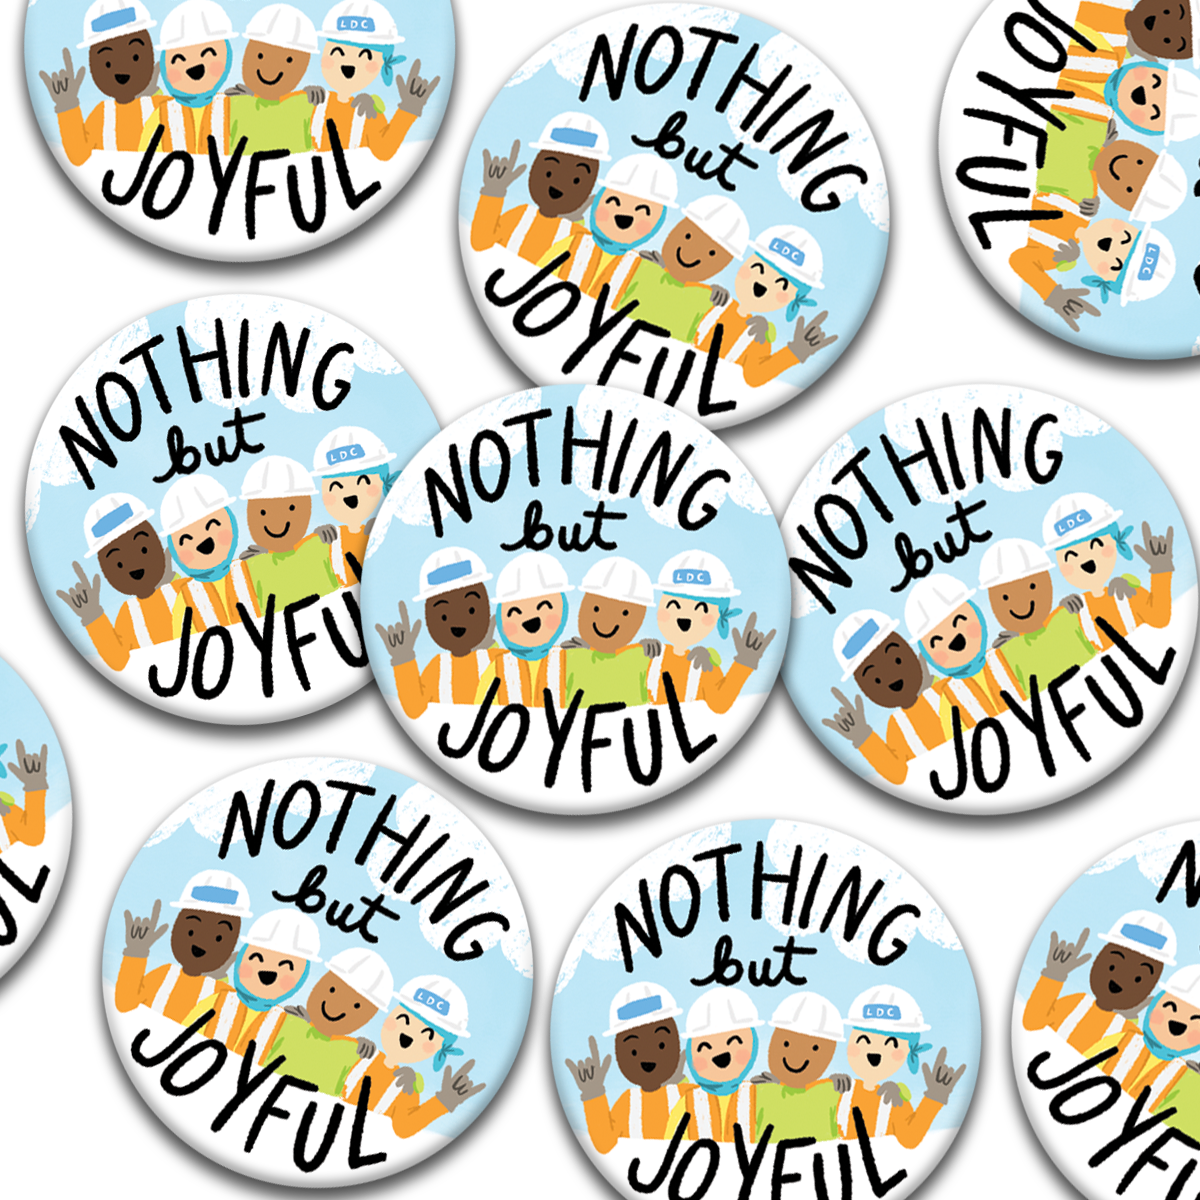 Nothing But Joyful LDC Pin Badges